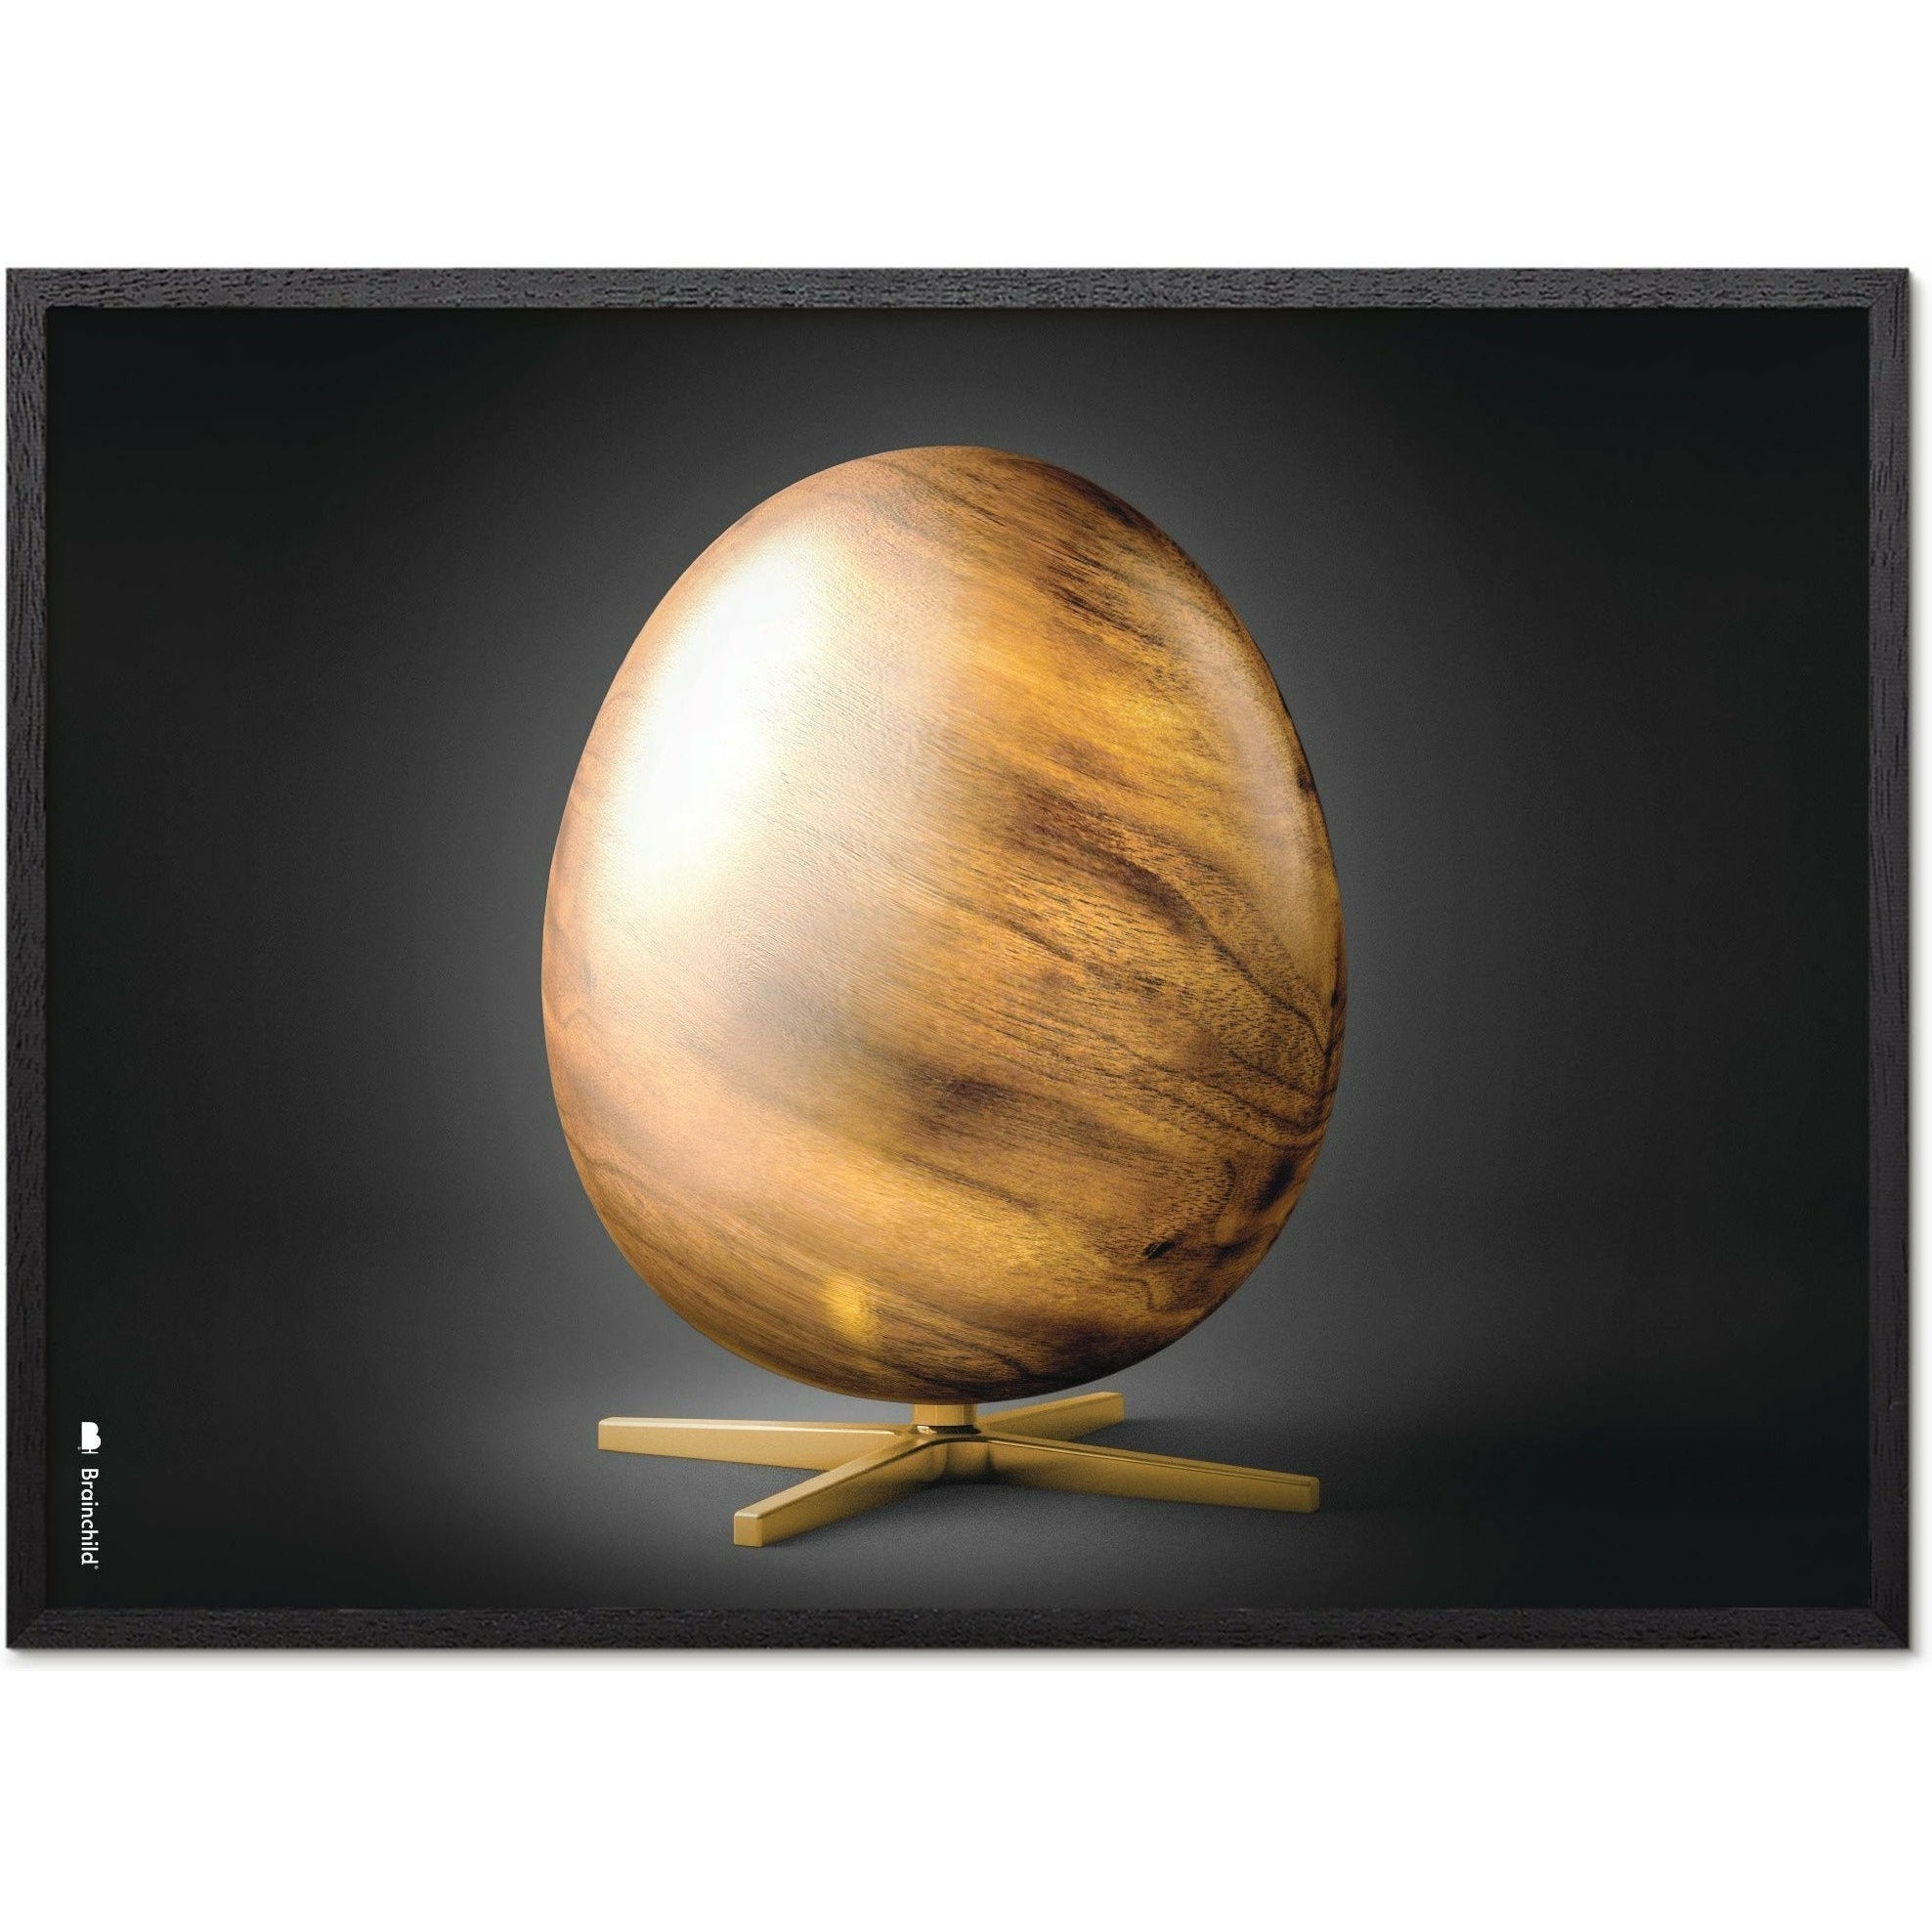 Póster de formato de cruce de huevo de creación, marco en madera lacada en negro 50x70 cm, negro